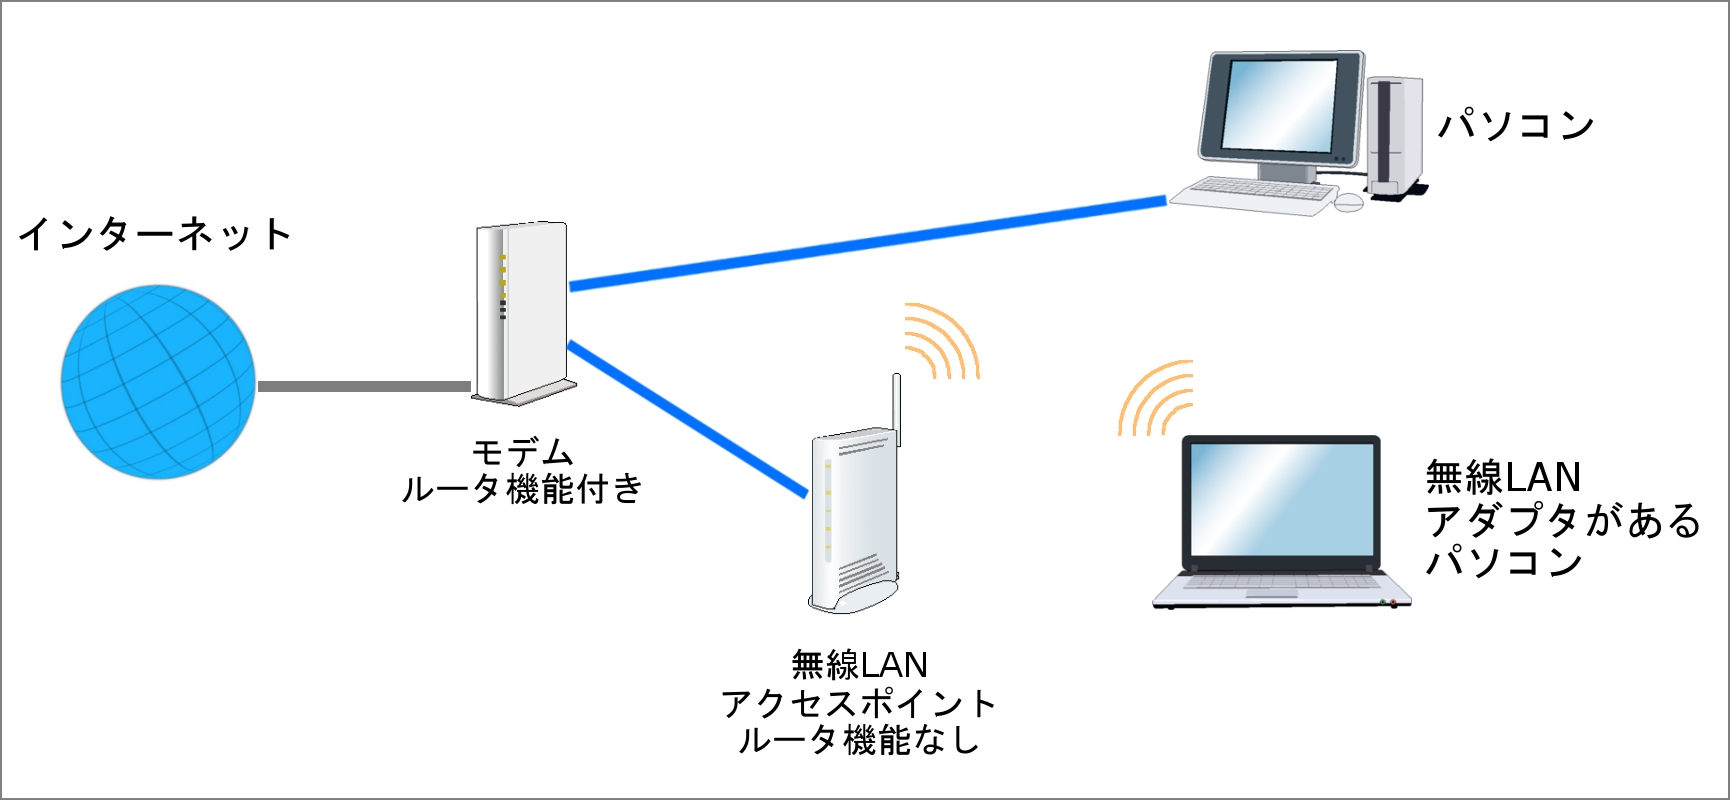 有線LANと無線LANの両方を利用した接続例